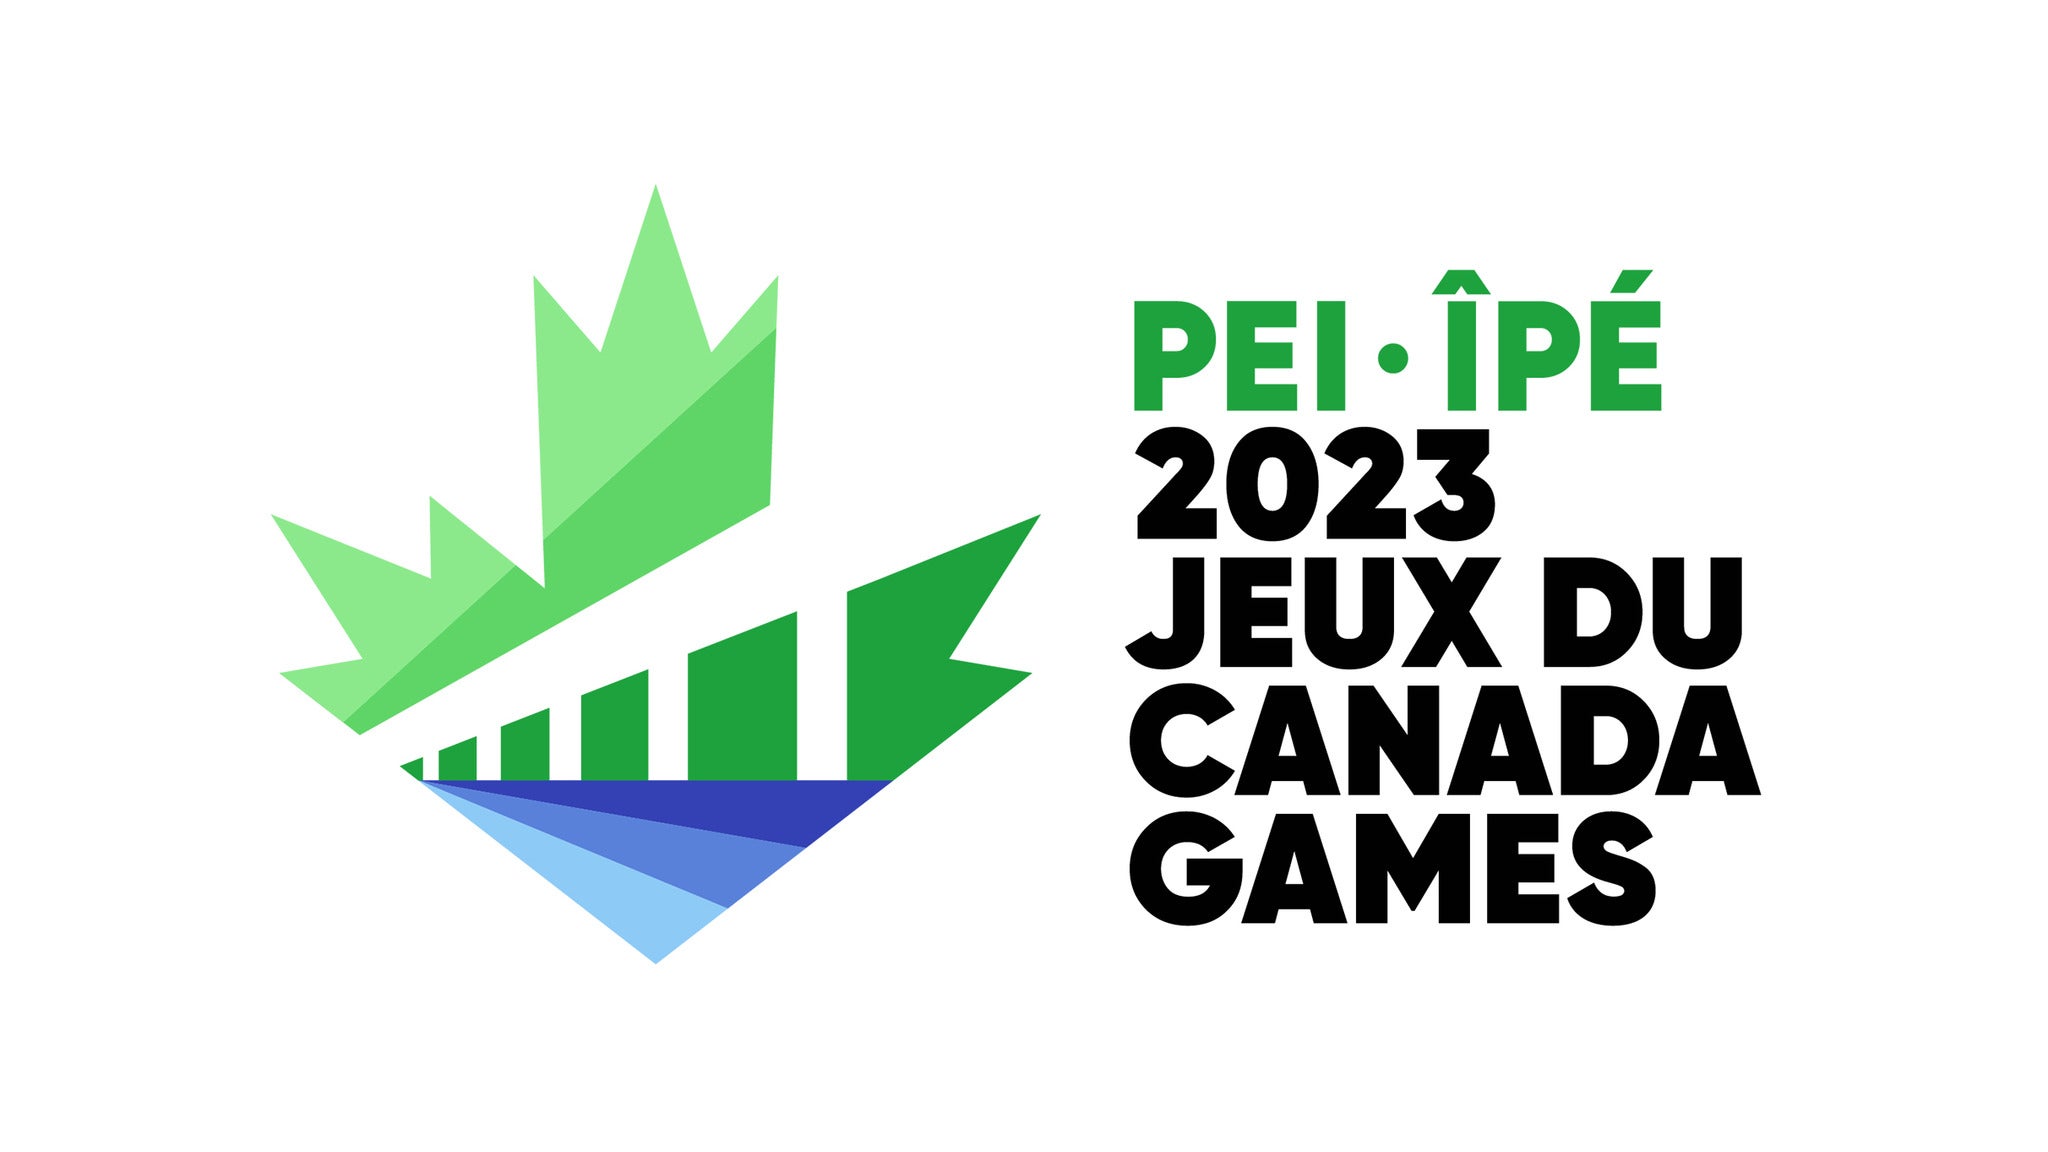 2023 Jeux du Canada Games - Mar 1 Single Day Pass / Billet De Journée in Summerside promo photo for Offer presale offer code